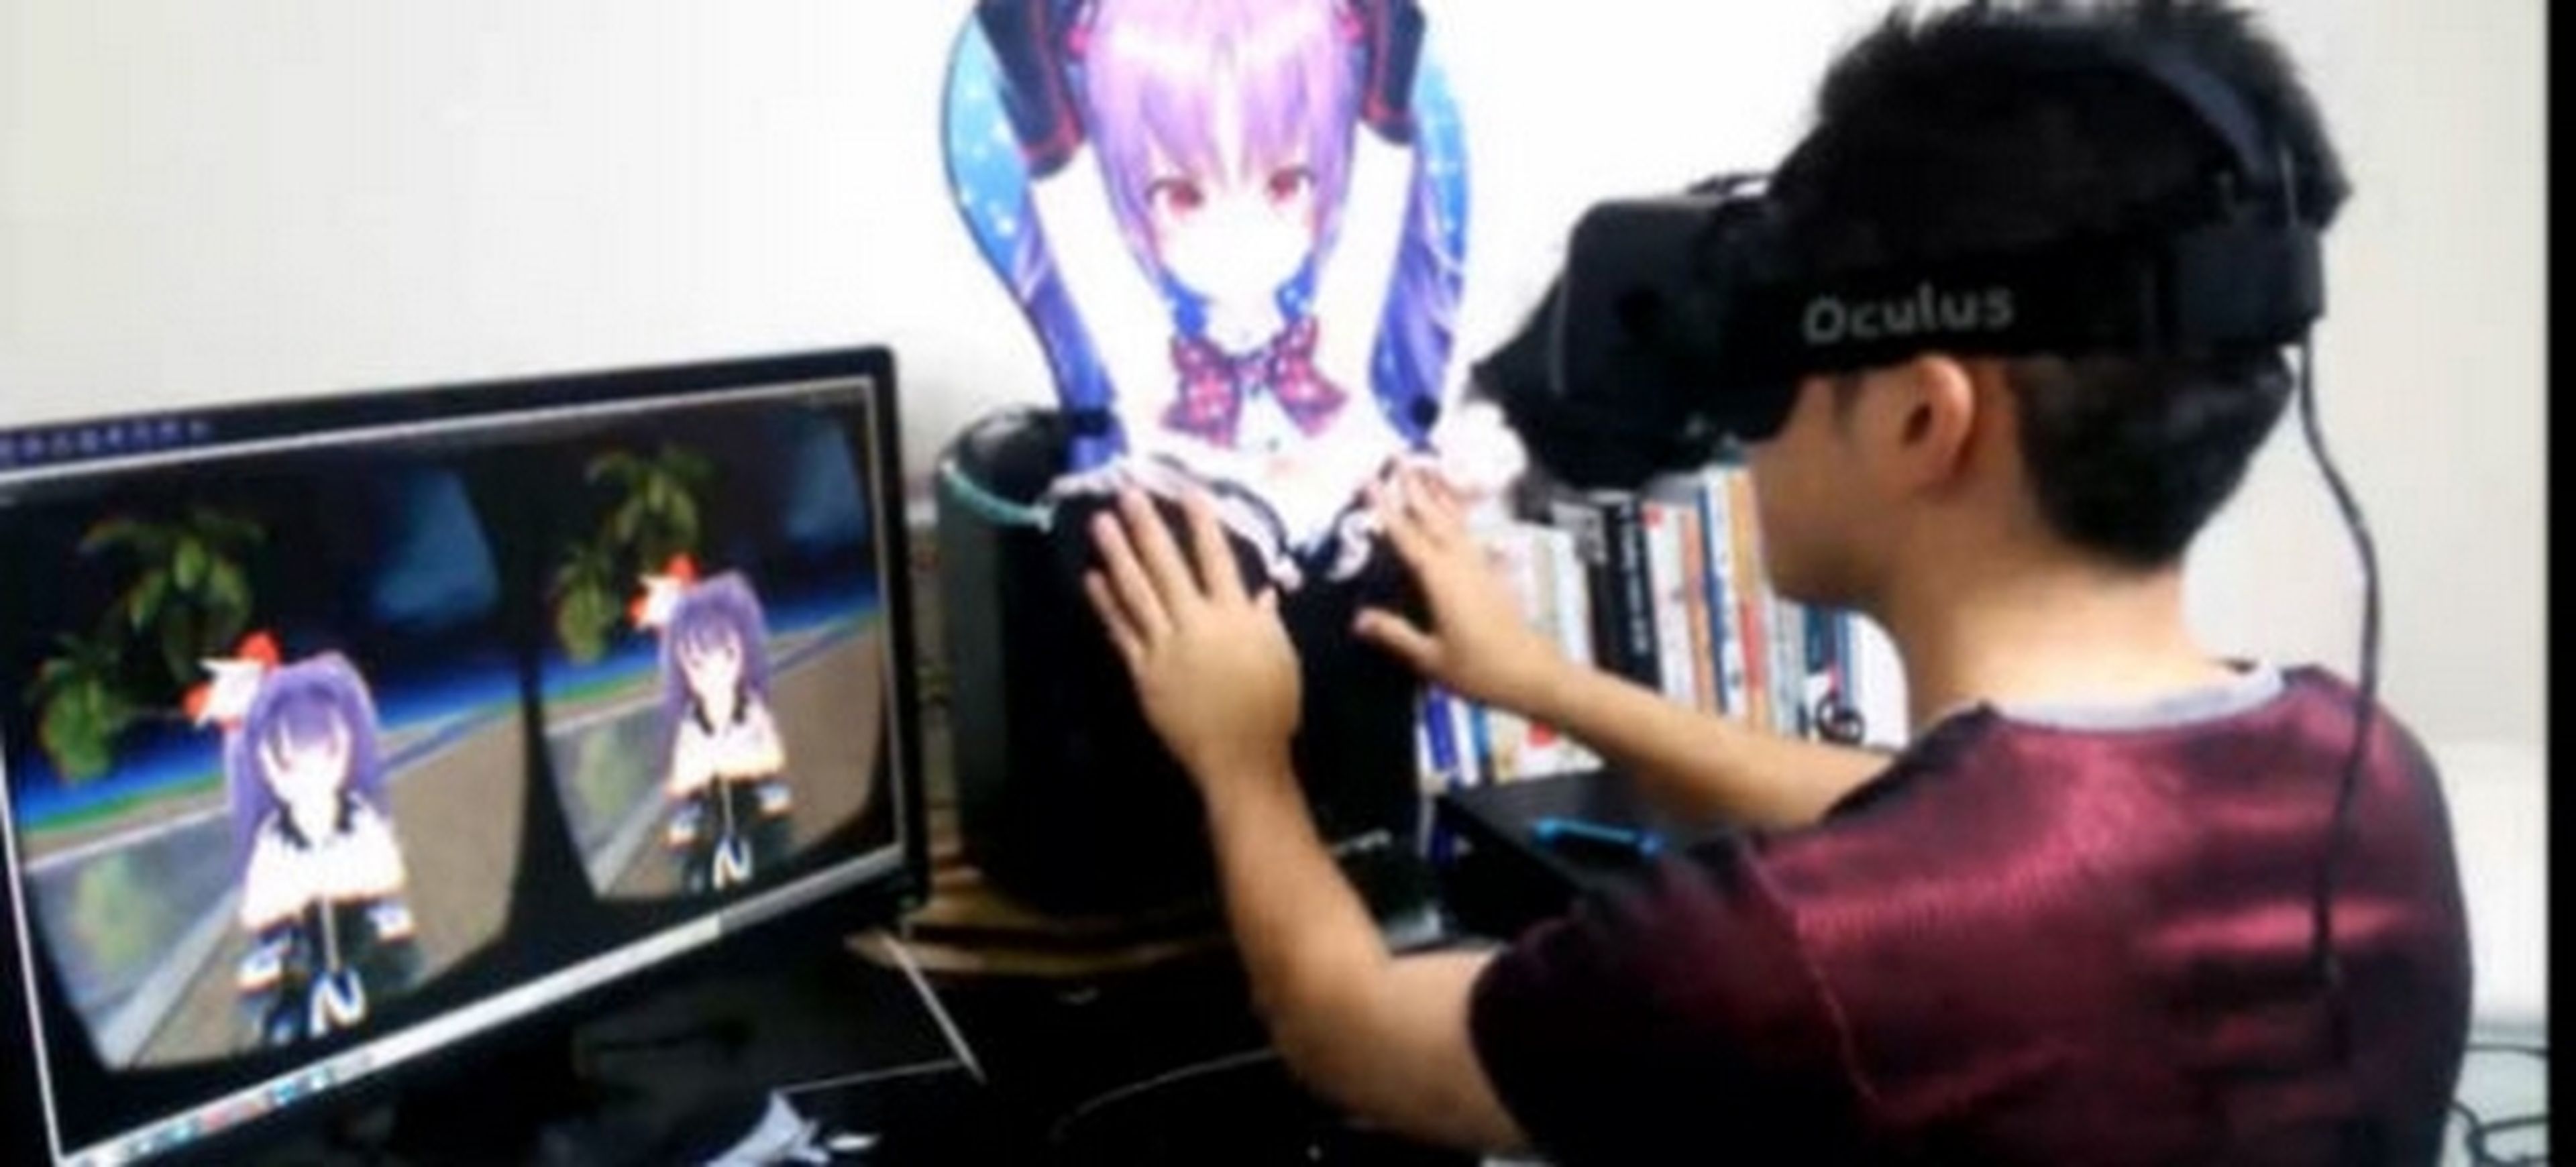 Juegos eróticos Oculus Rift